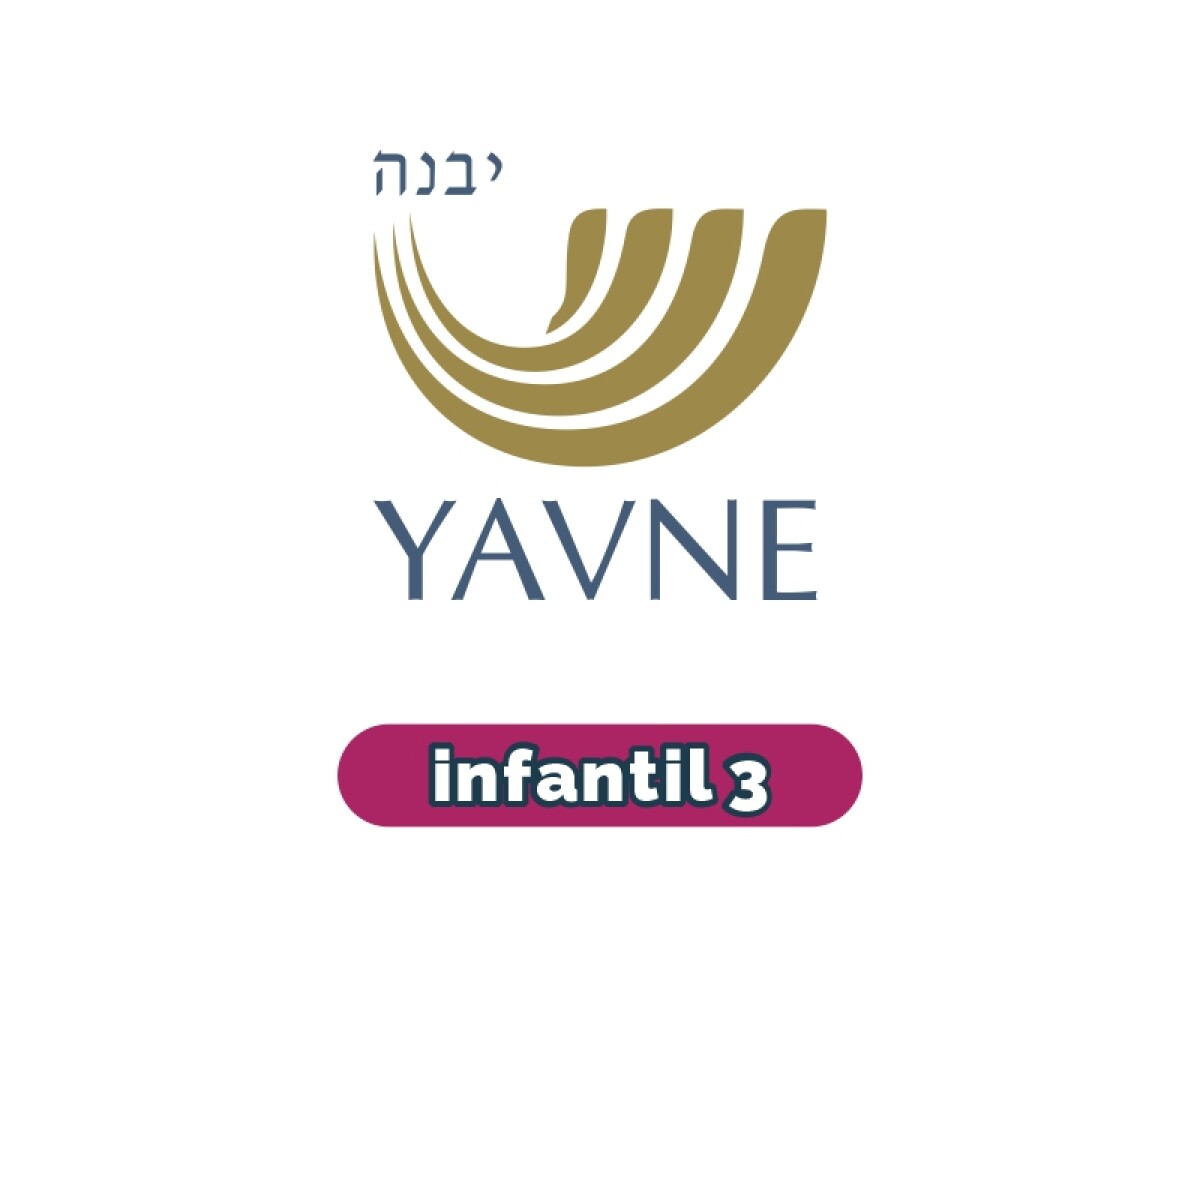 Lista de materiales - Infantil 3 YAVNE 